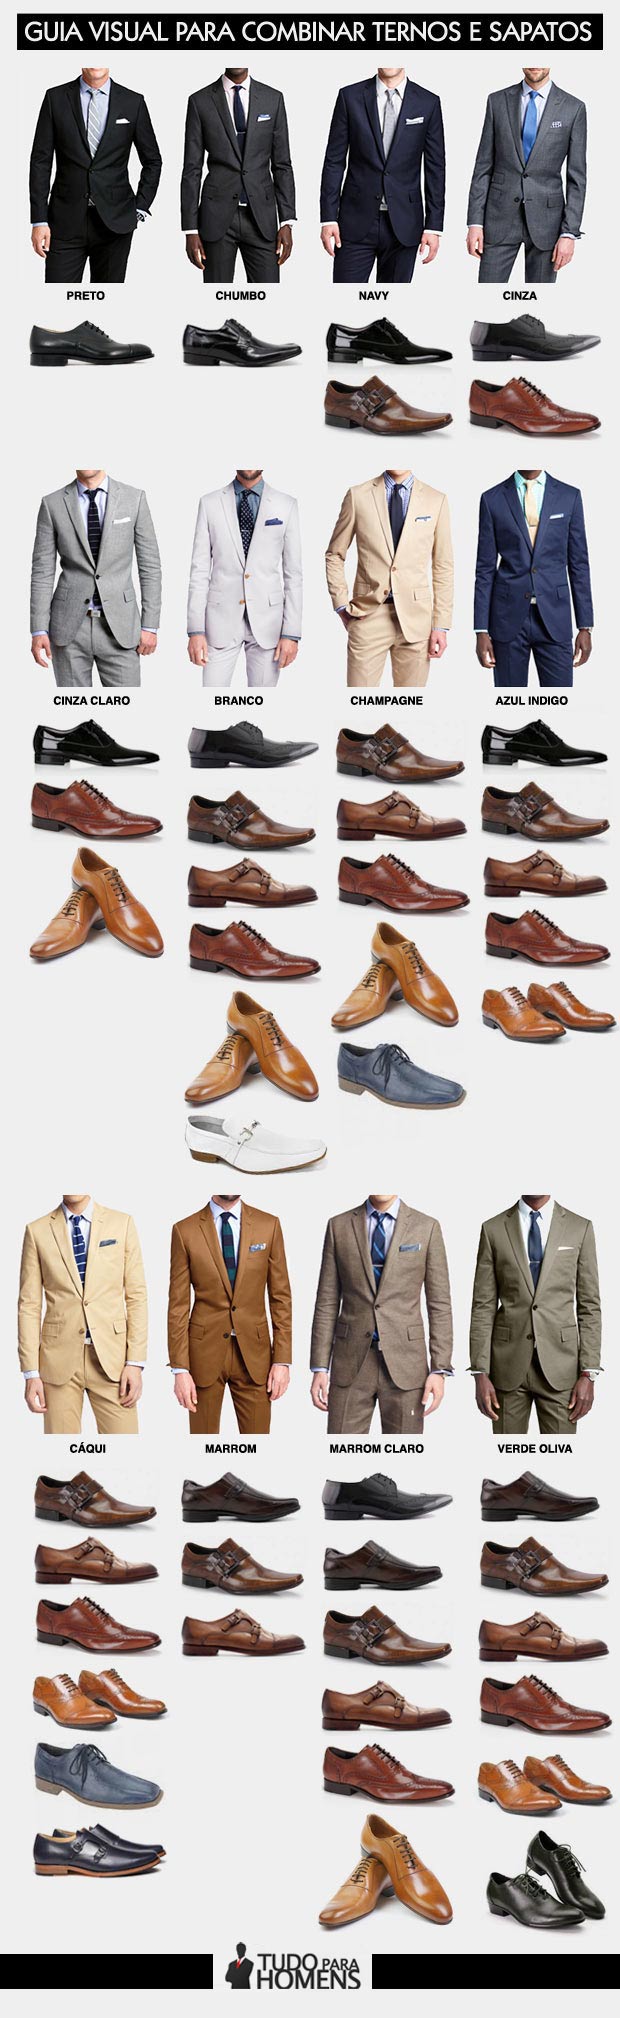 Guia visual para combinar ternos e sapatos